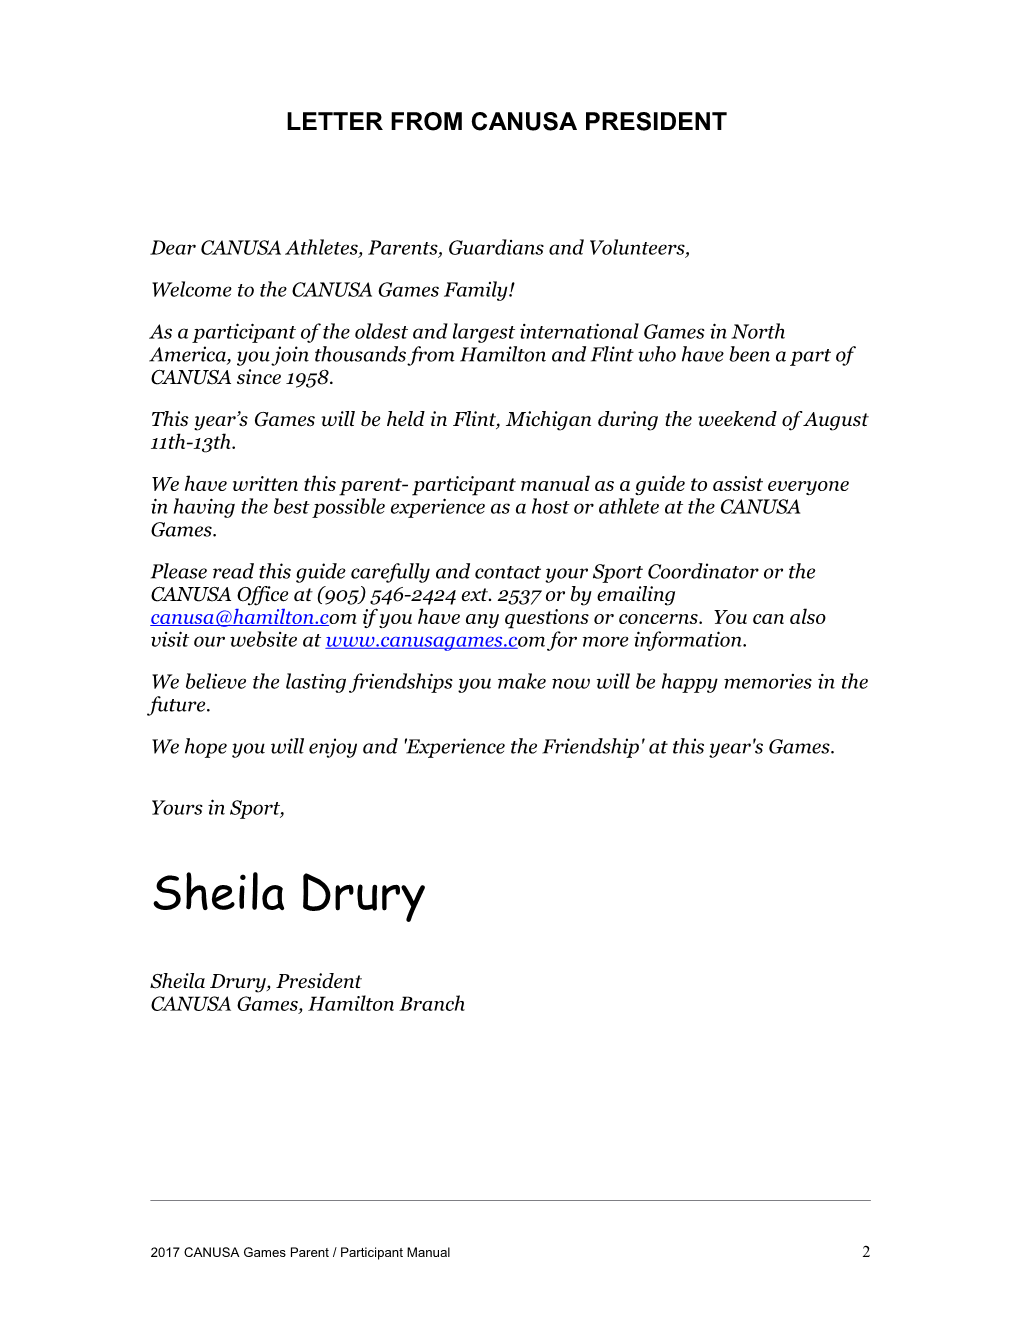 Letter from Canusa President . 2